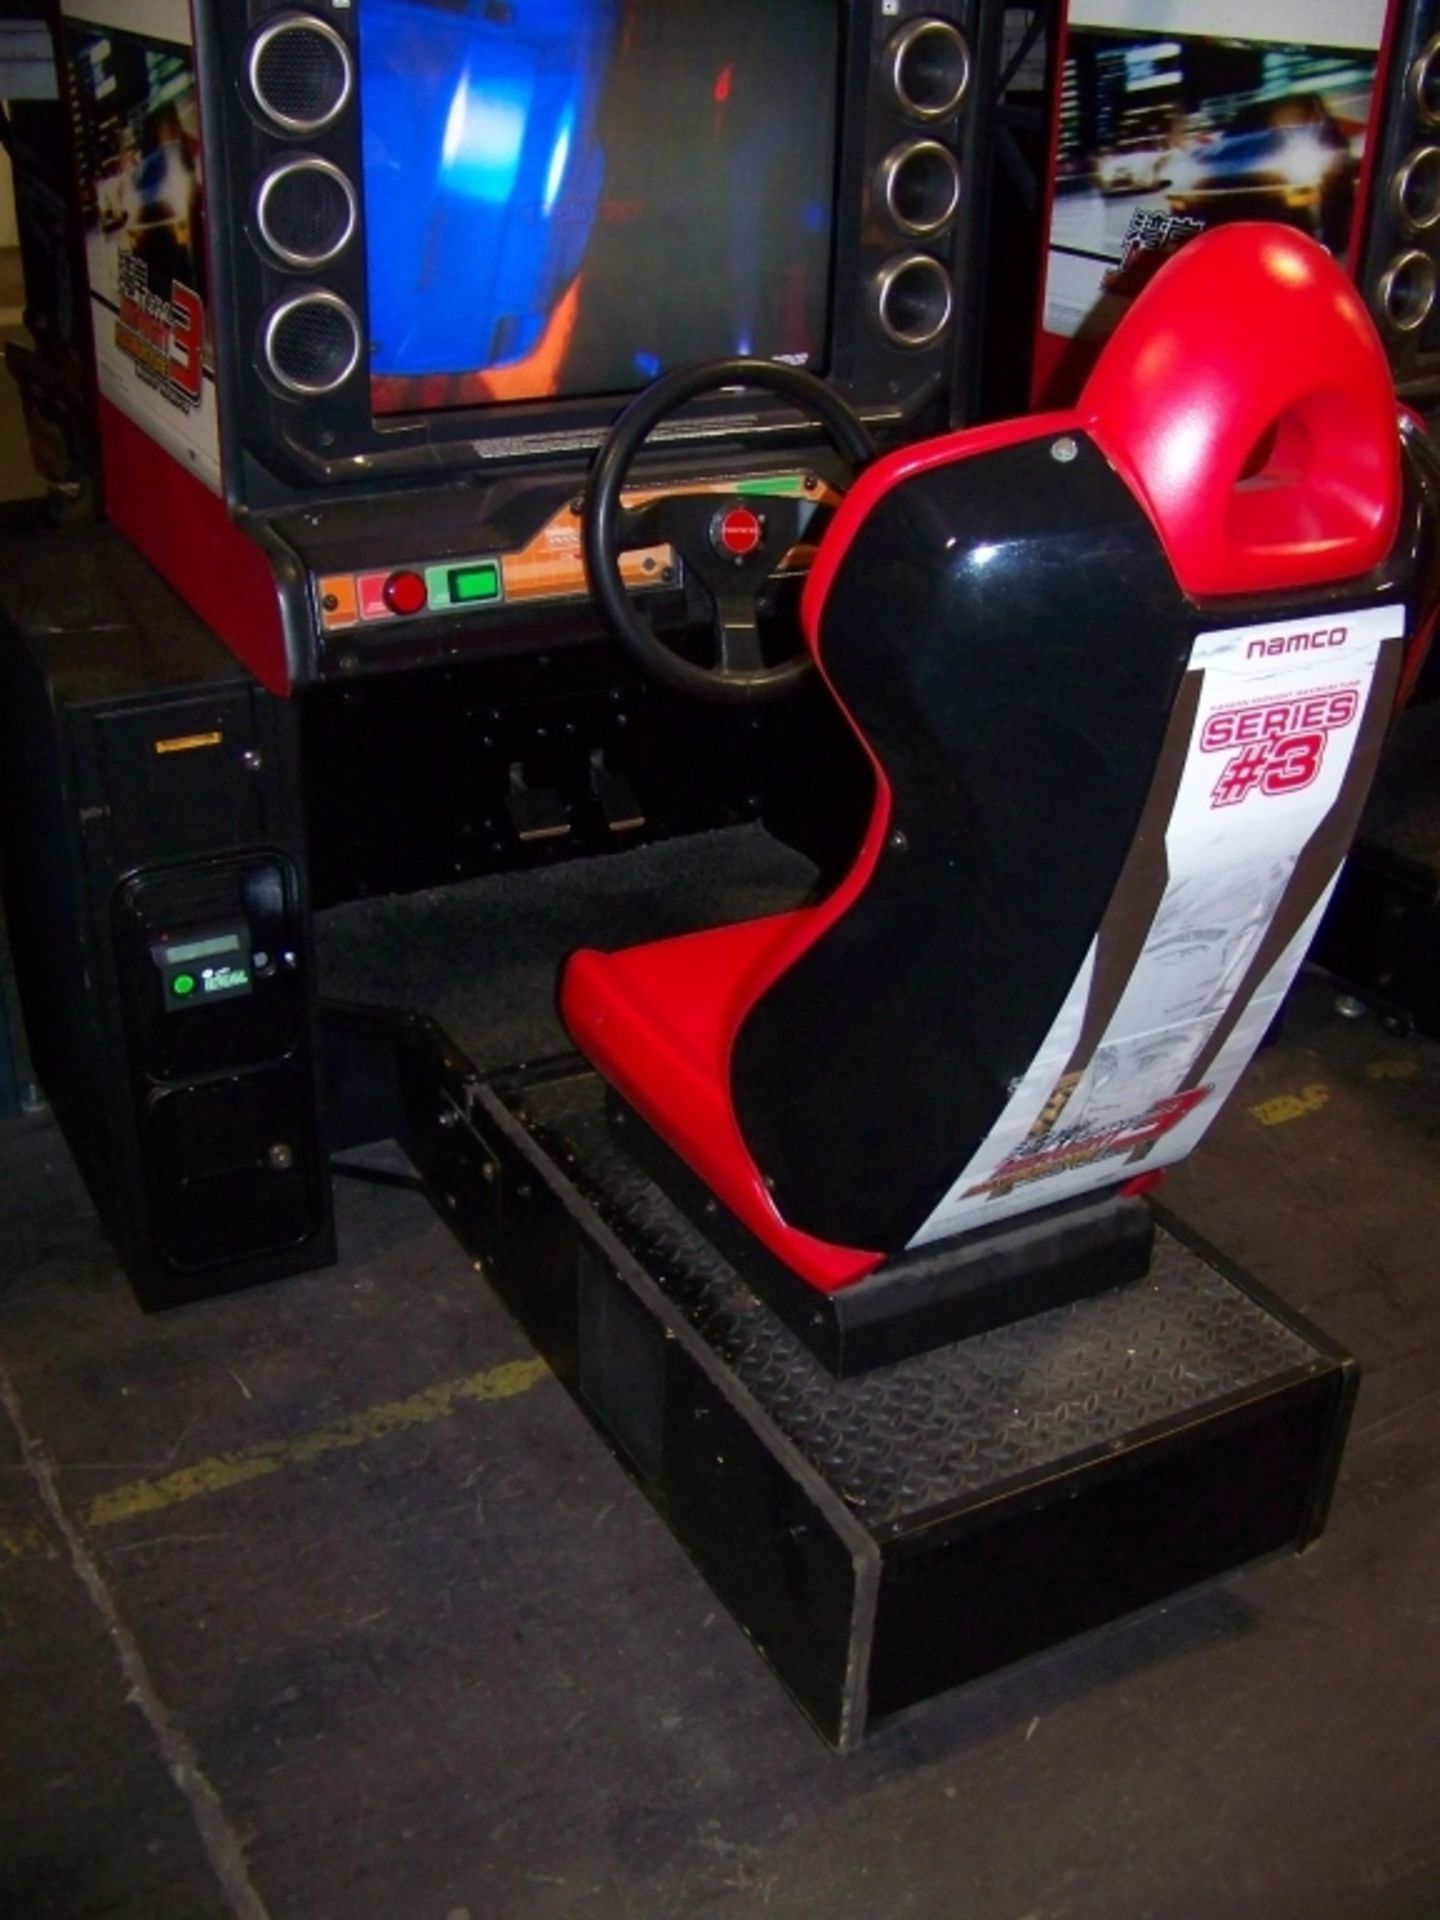 MAXIMUM TUNE 3 MIDNIGHT DRIVER ARCADE GAME NAMCO - Image 4 of 6